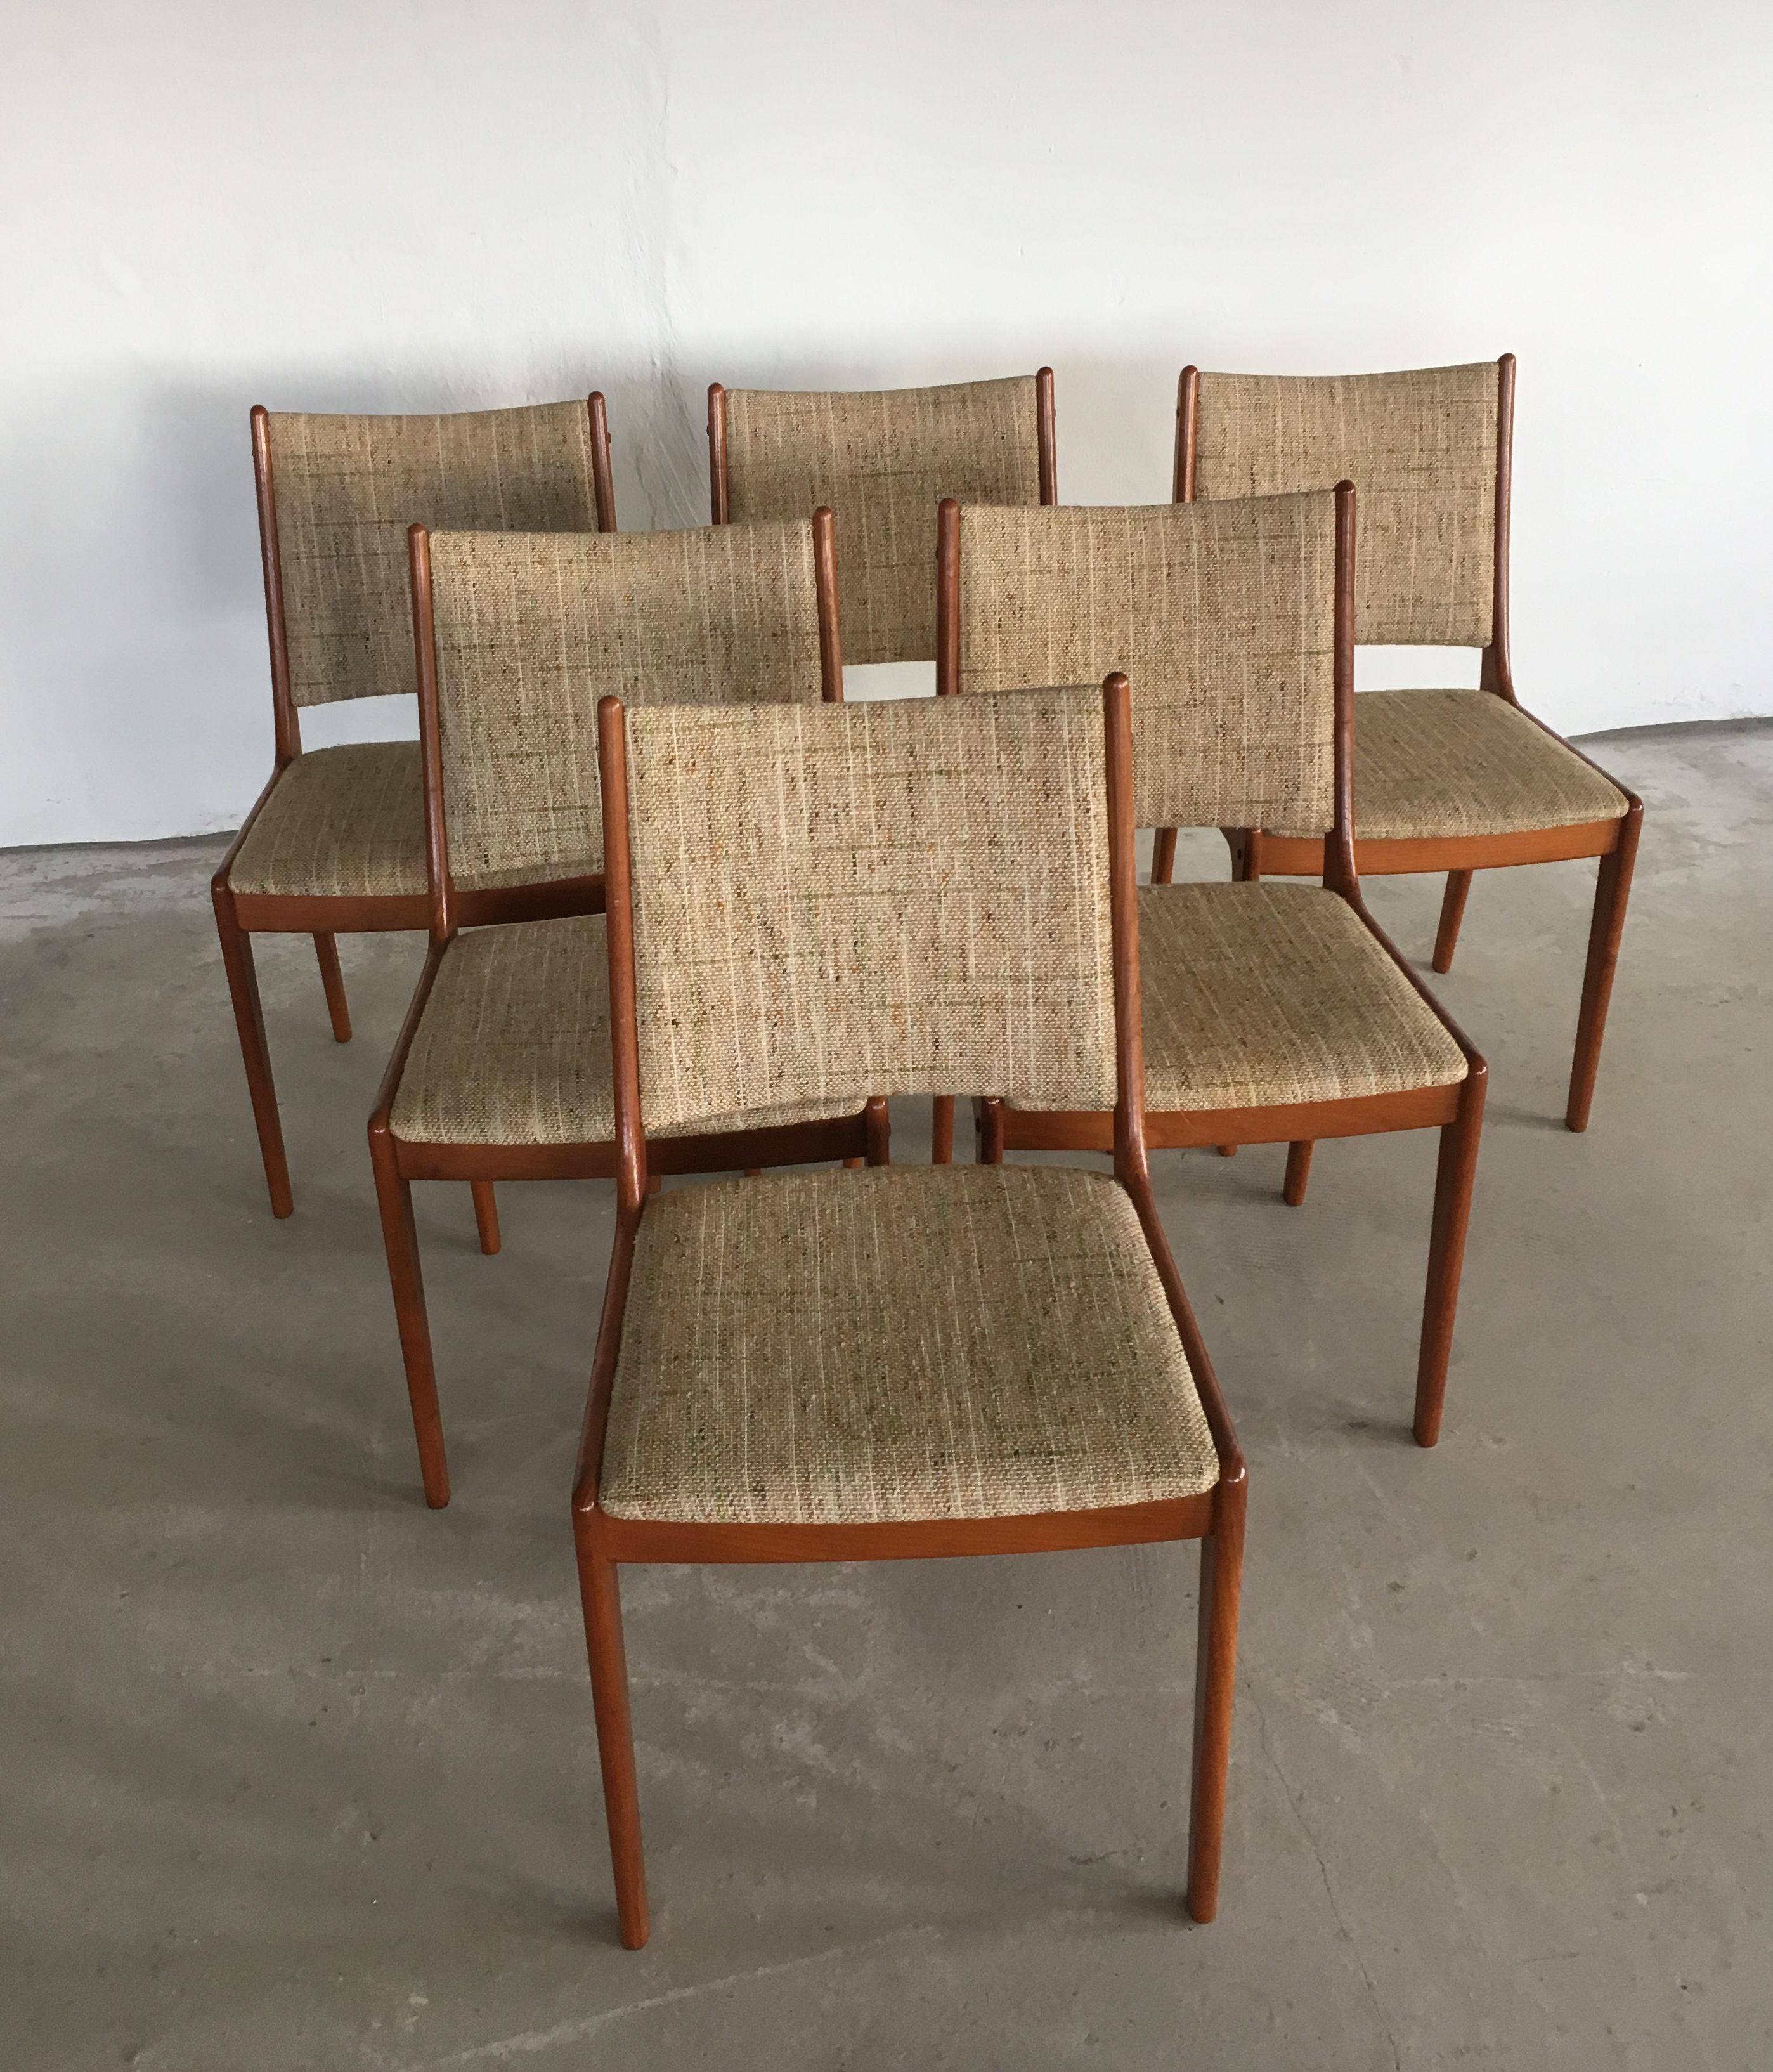 Ensemble de six chaises de salle à manger Johannes Andersen des années 1960 en teck, fabriquées par Uldum Møbler, Danemark.

L'ensemble de chaises de salle à manger présente un design simple et élégant qui s'intégrera parfaitement dans la plupart